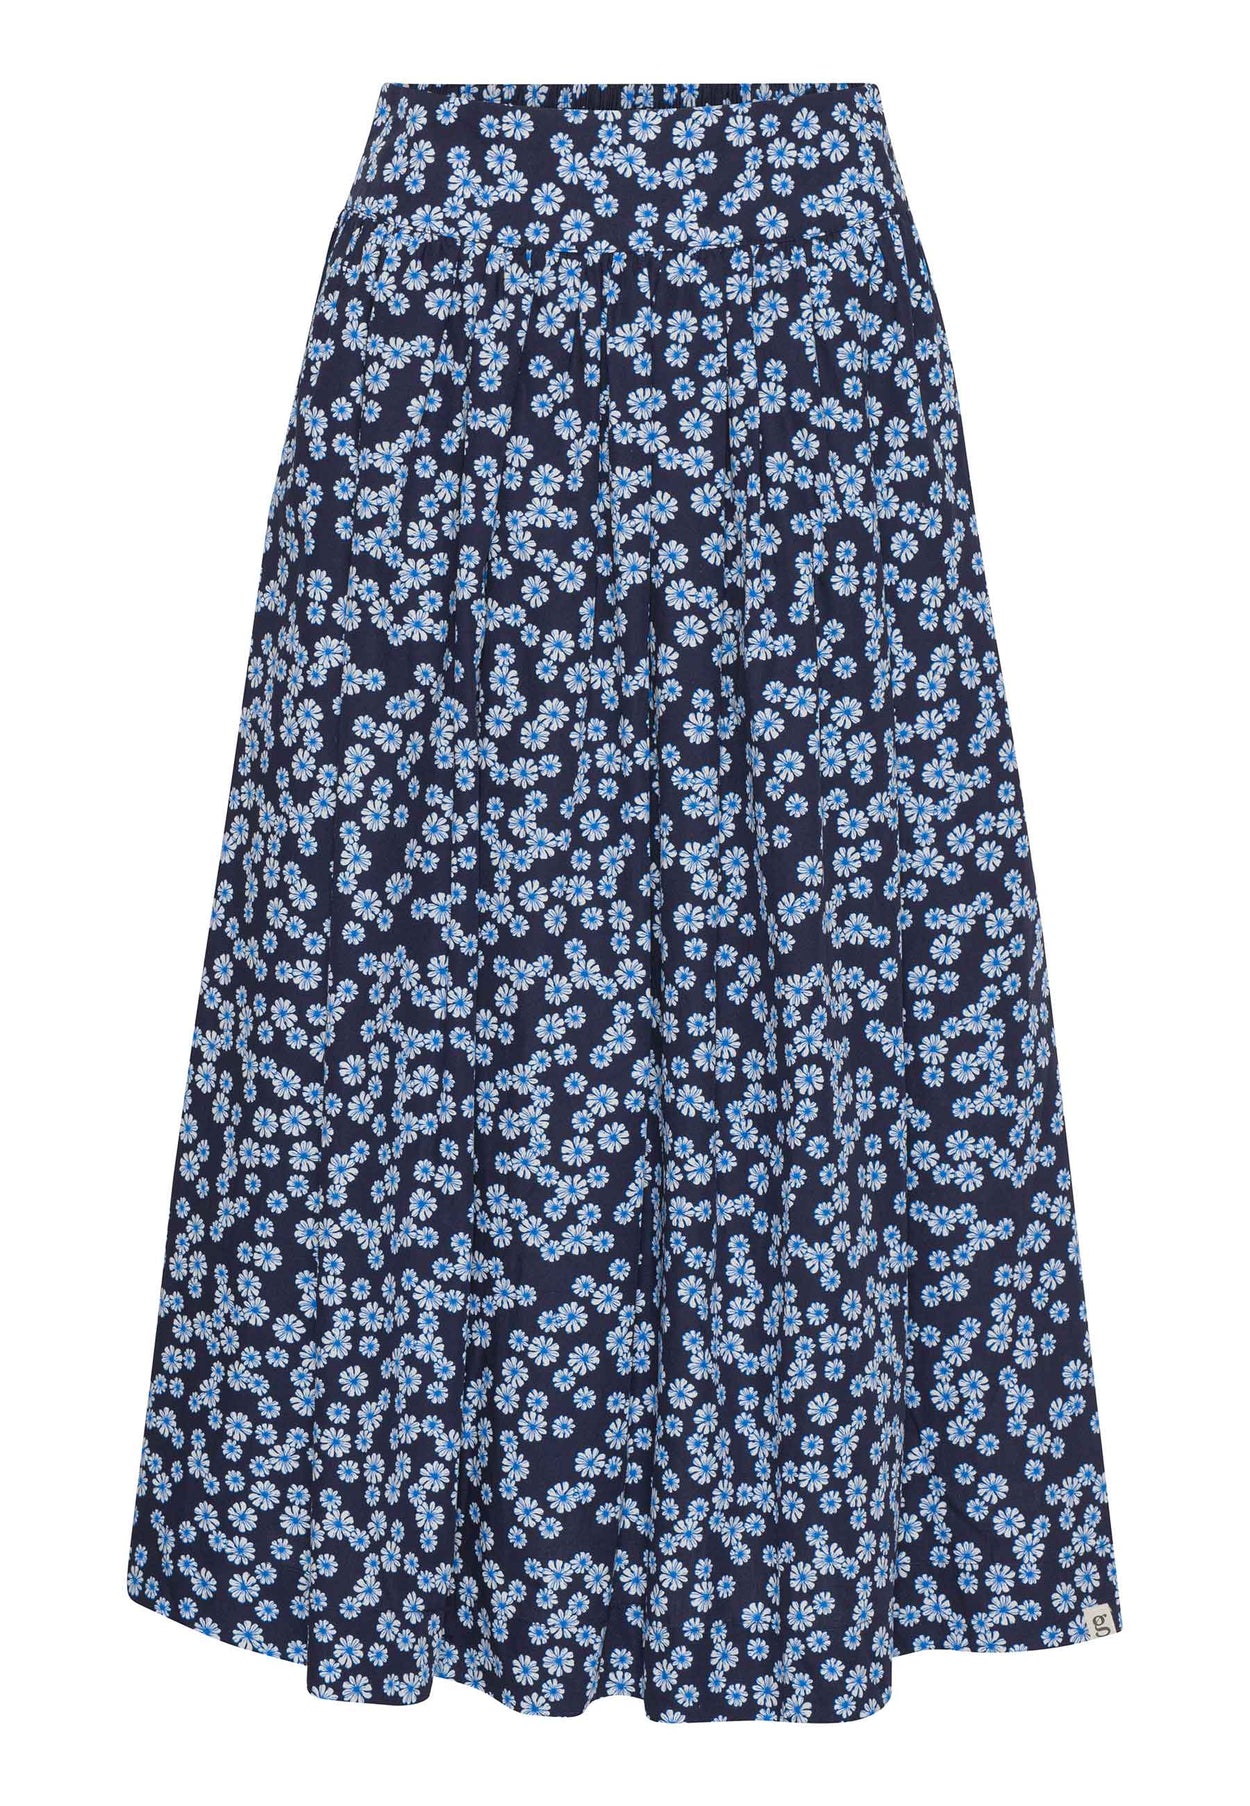 GROBUND Mette nederdel - den lange i blå med blomster